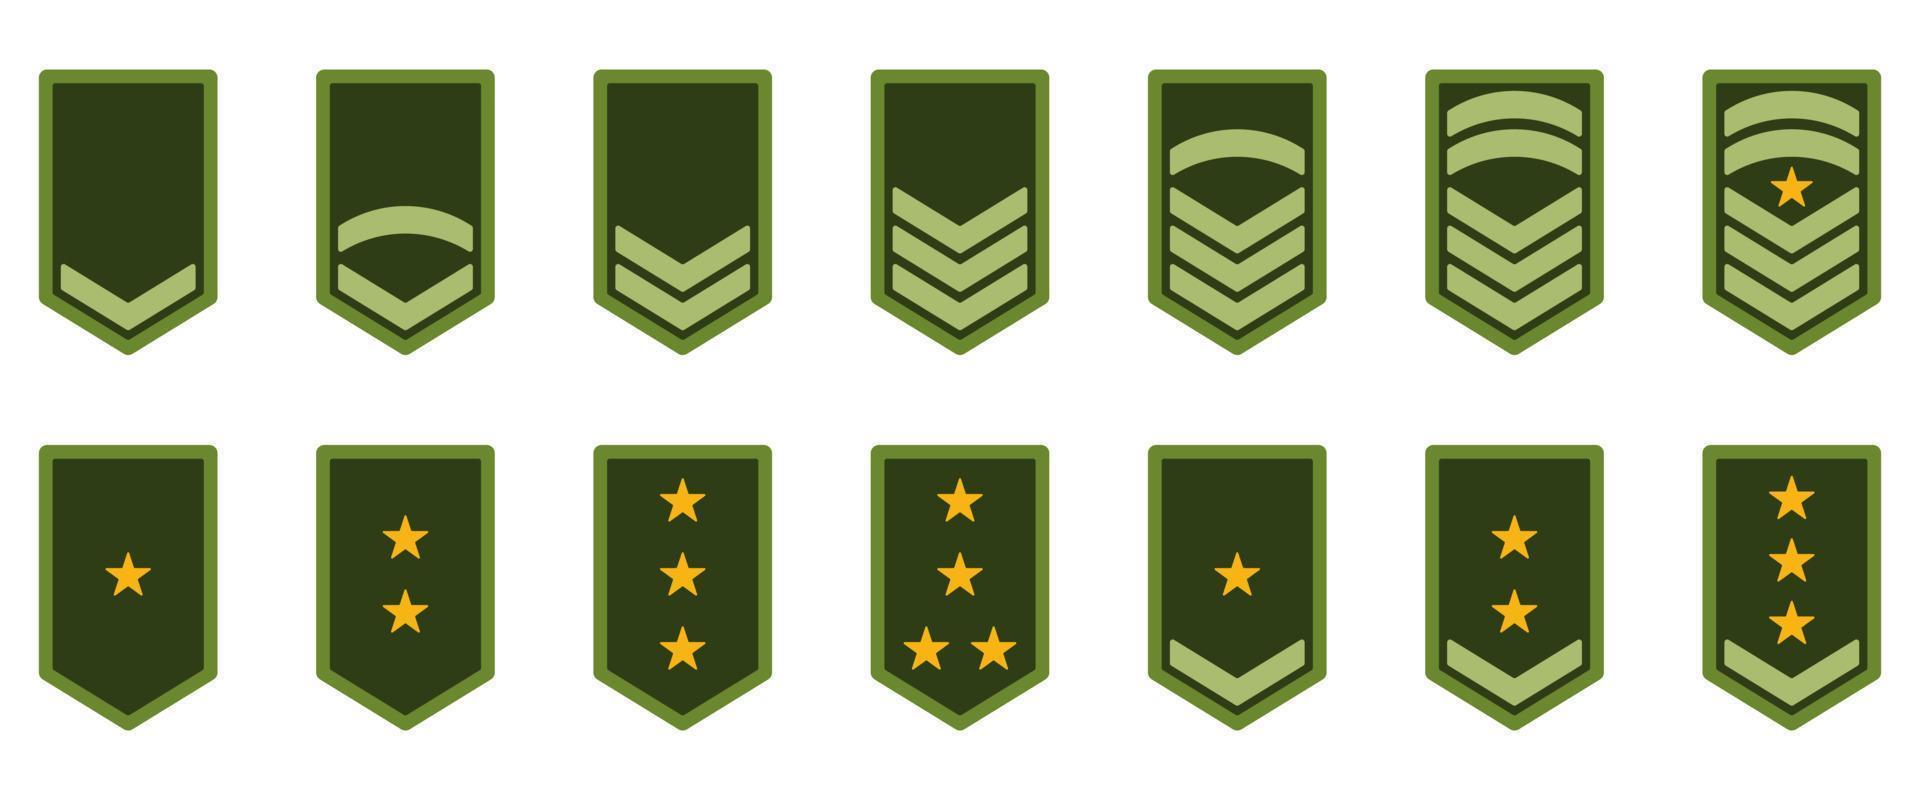 icona del grado dell'esercito. distintivo militare insegne simbolo verde. logo chevron stelle e strisce gialle. sergente soldato, maggiore, ufficiale, generale, tenente, colonnello emblema. illustrazione vettoriale isolata